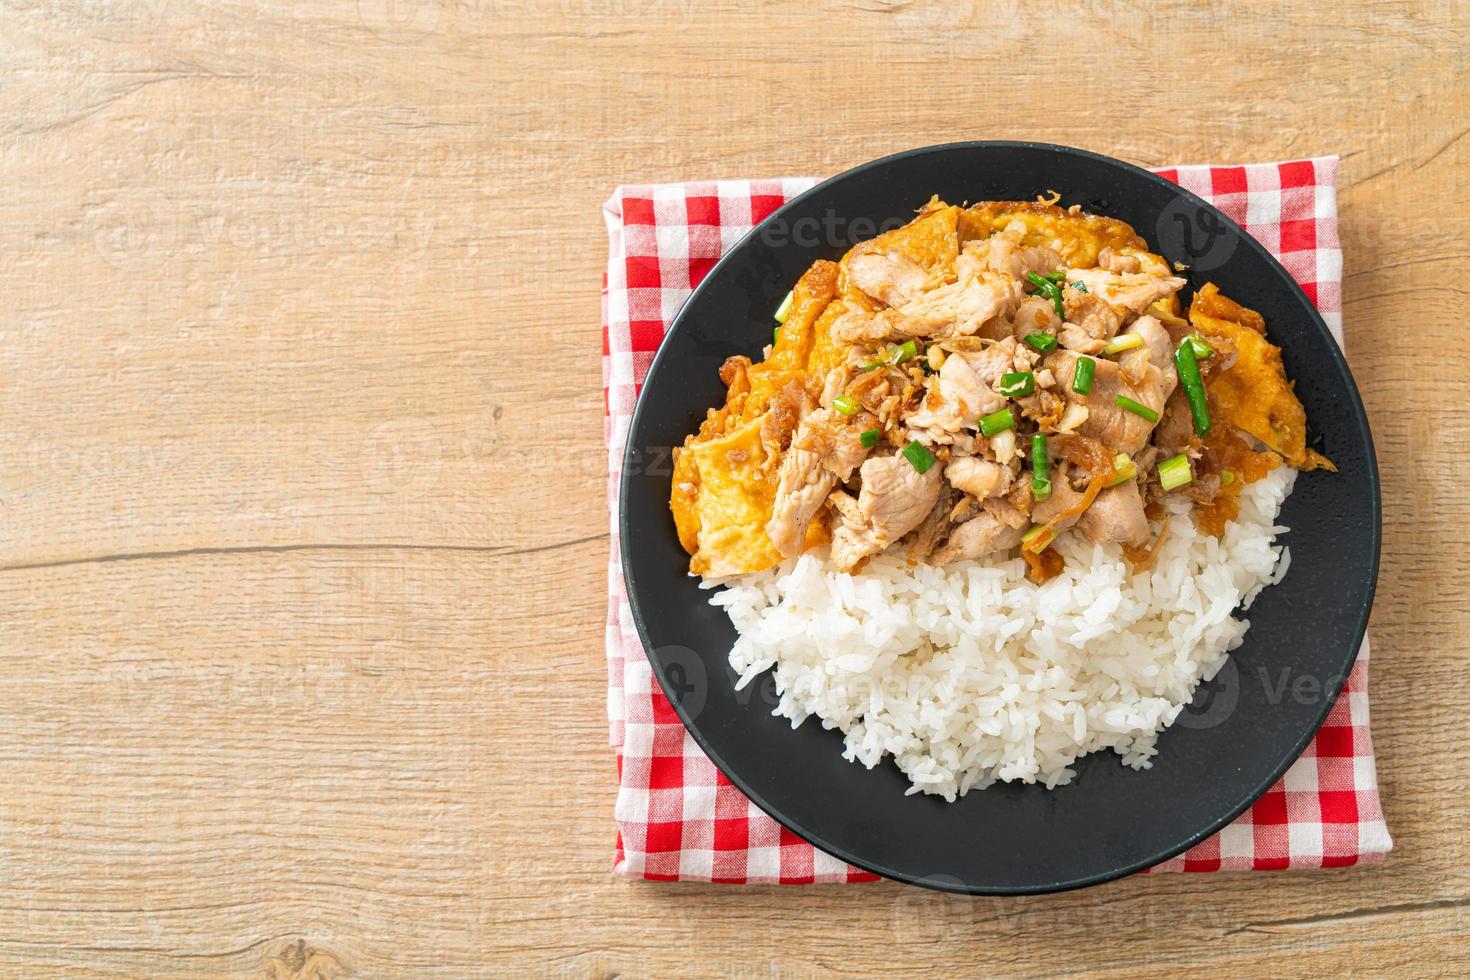 gebratenes Schweinefleisch mit Knoblauch und Ei auf Reis - asiatische Küche foto